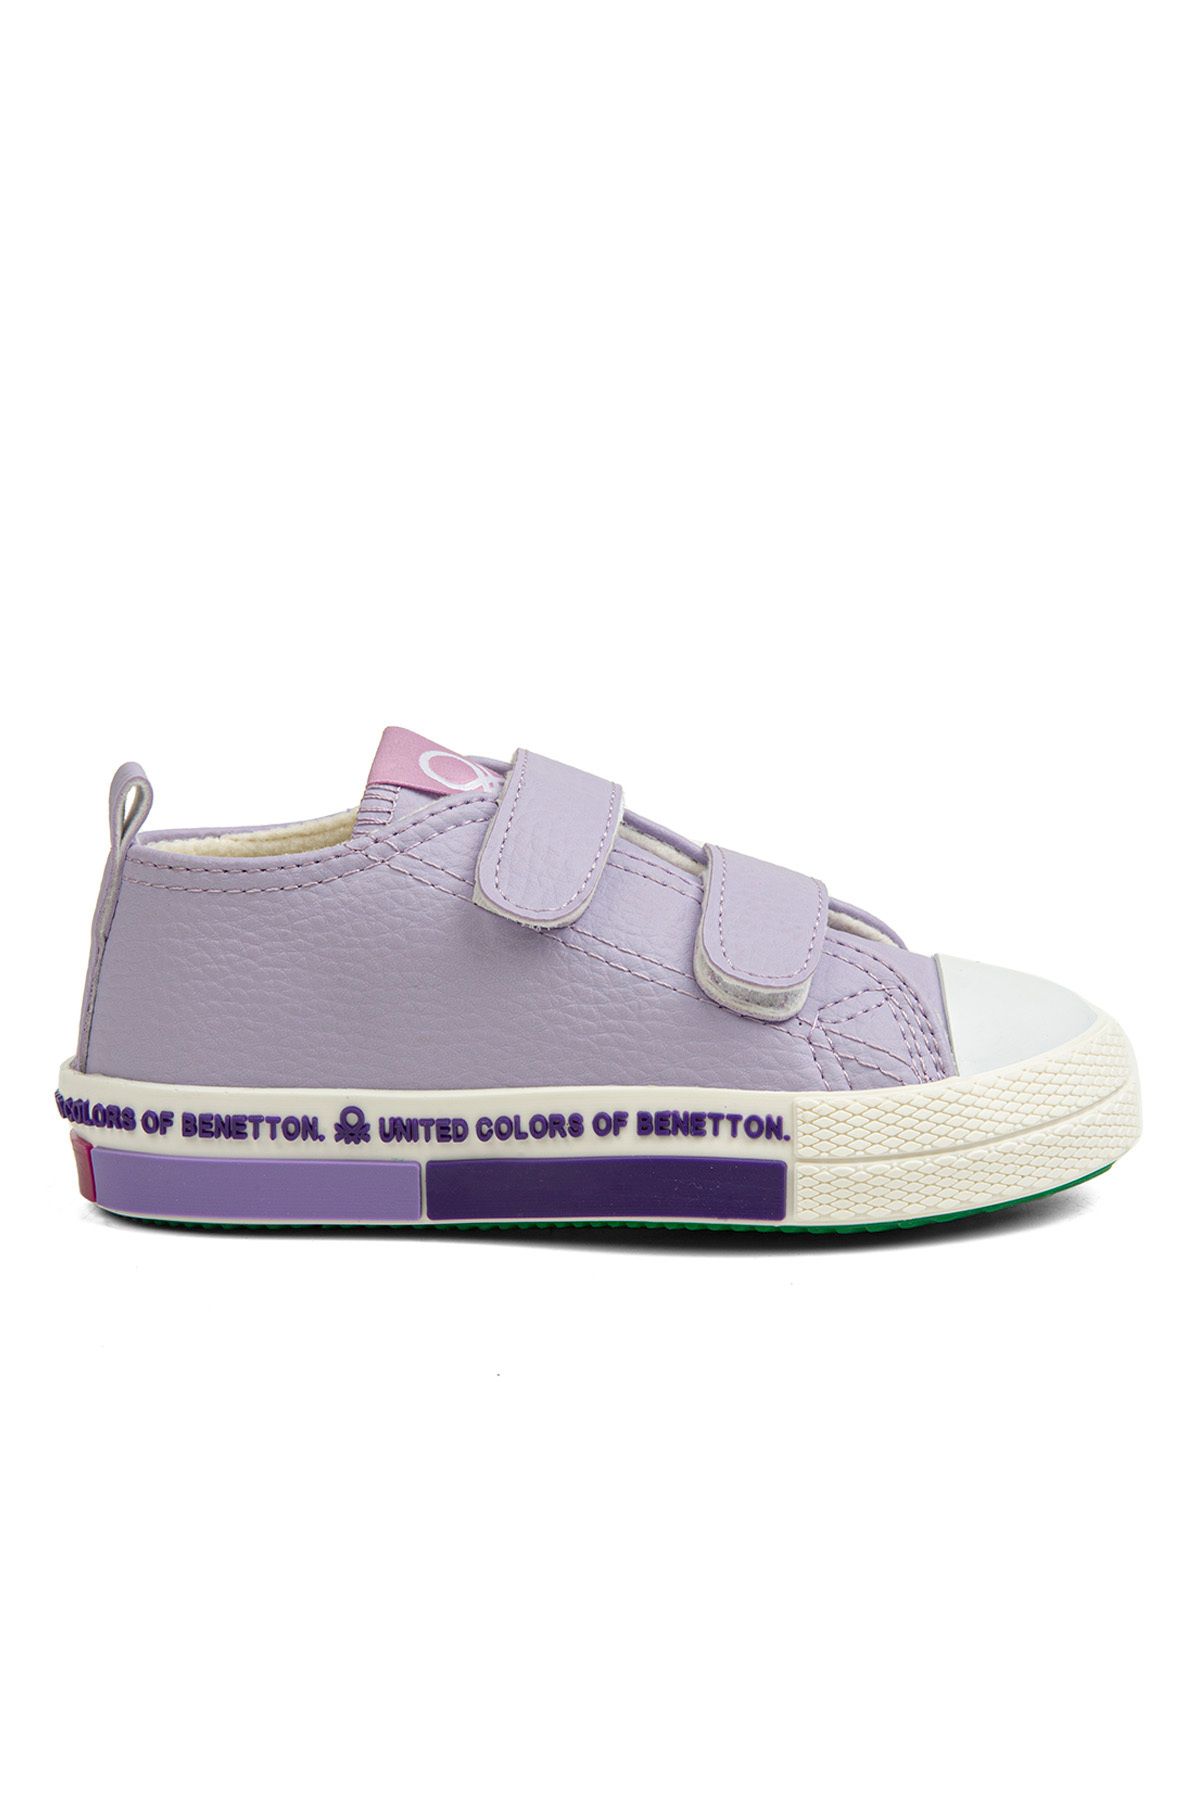 Benetton ® | BN-30804- Lila - Çocuk Spor Ayakkabı